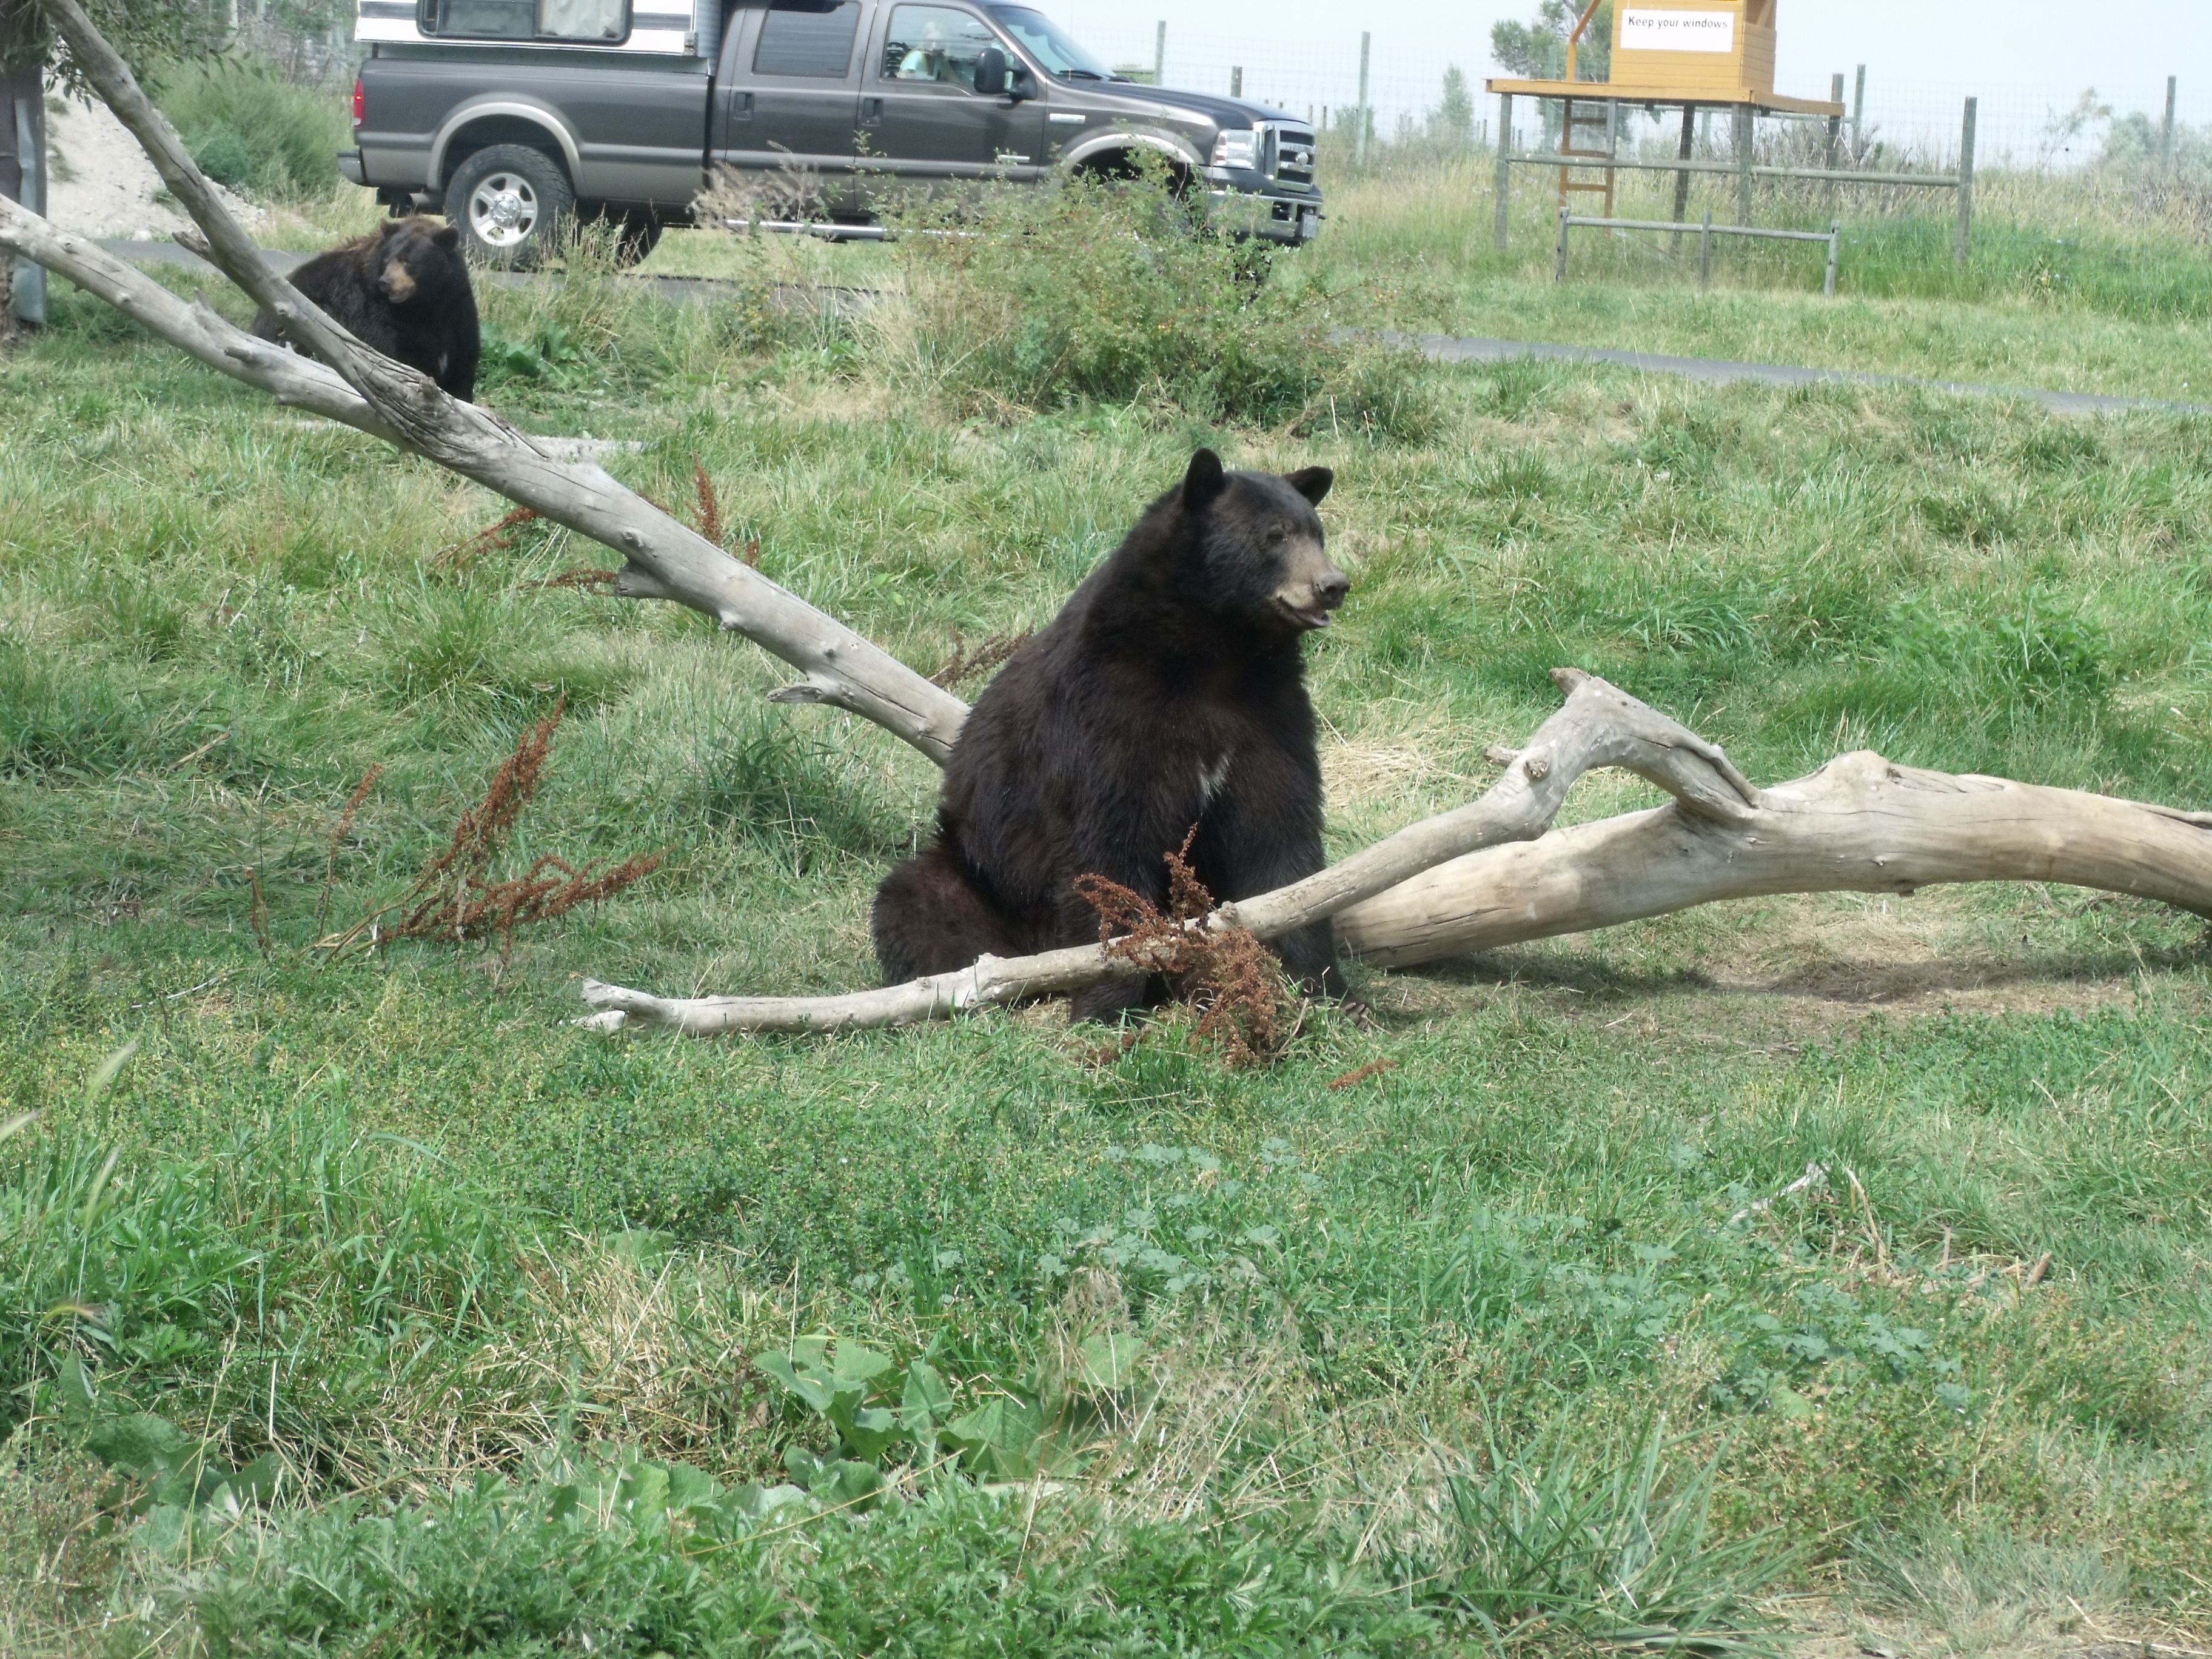 Photo of Bears at Bear World